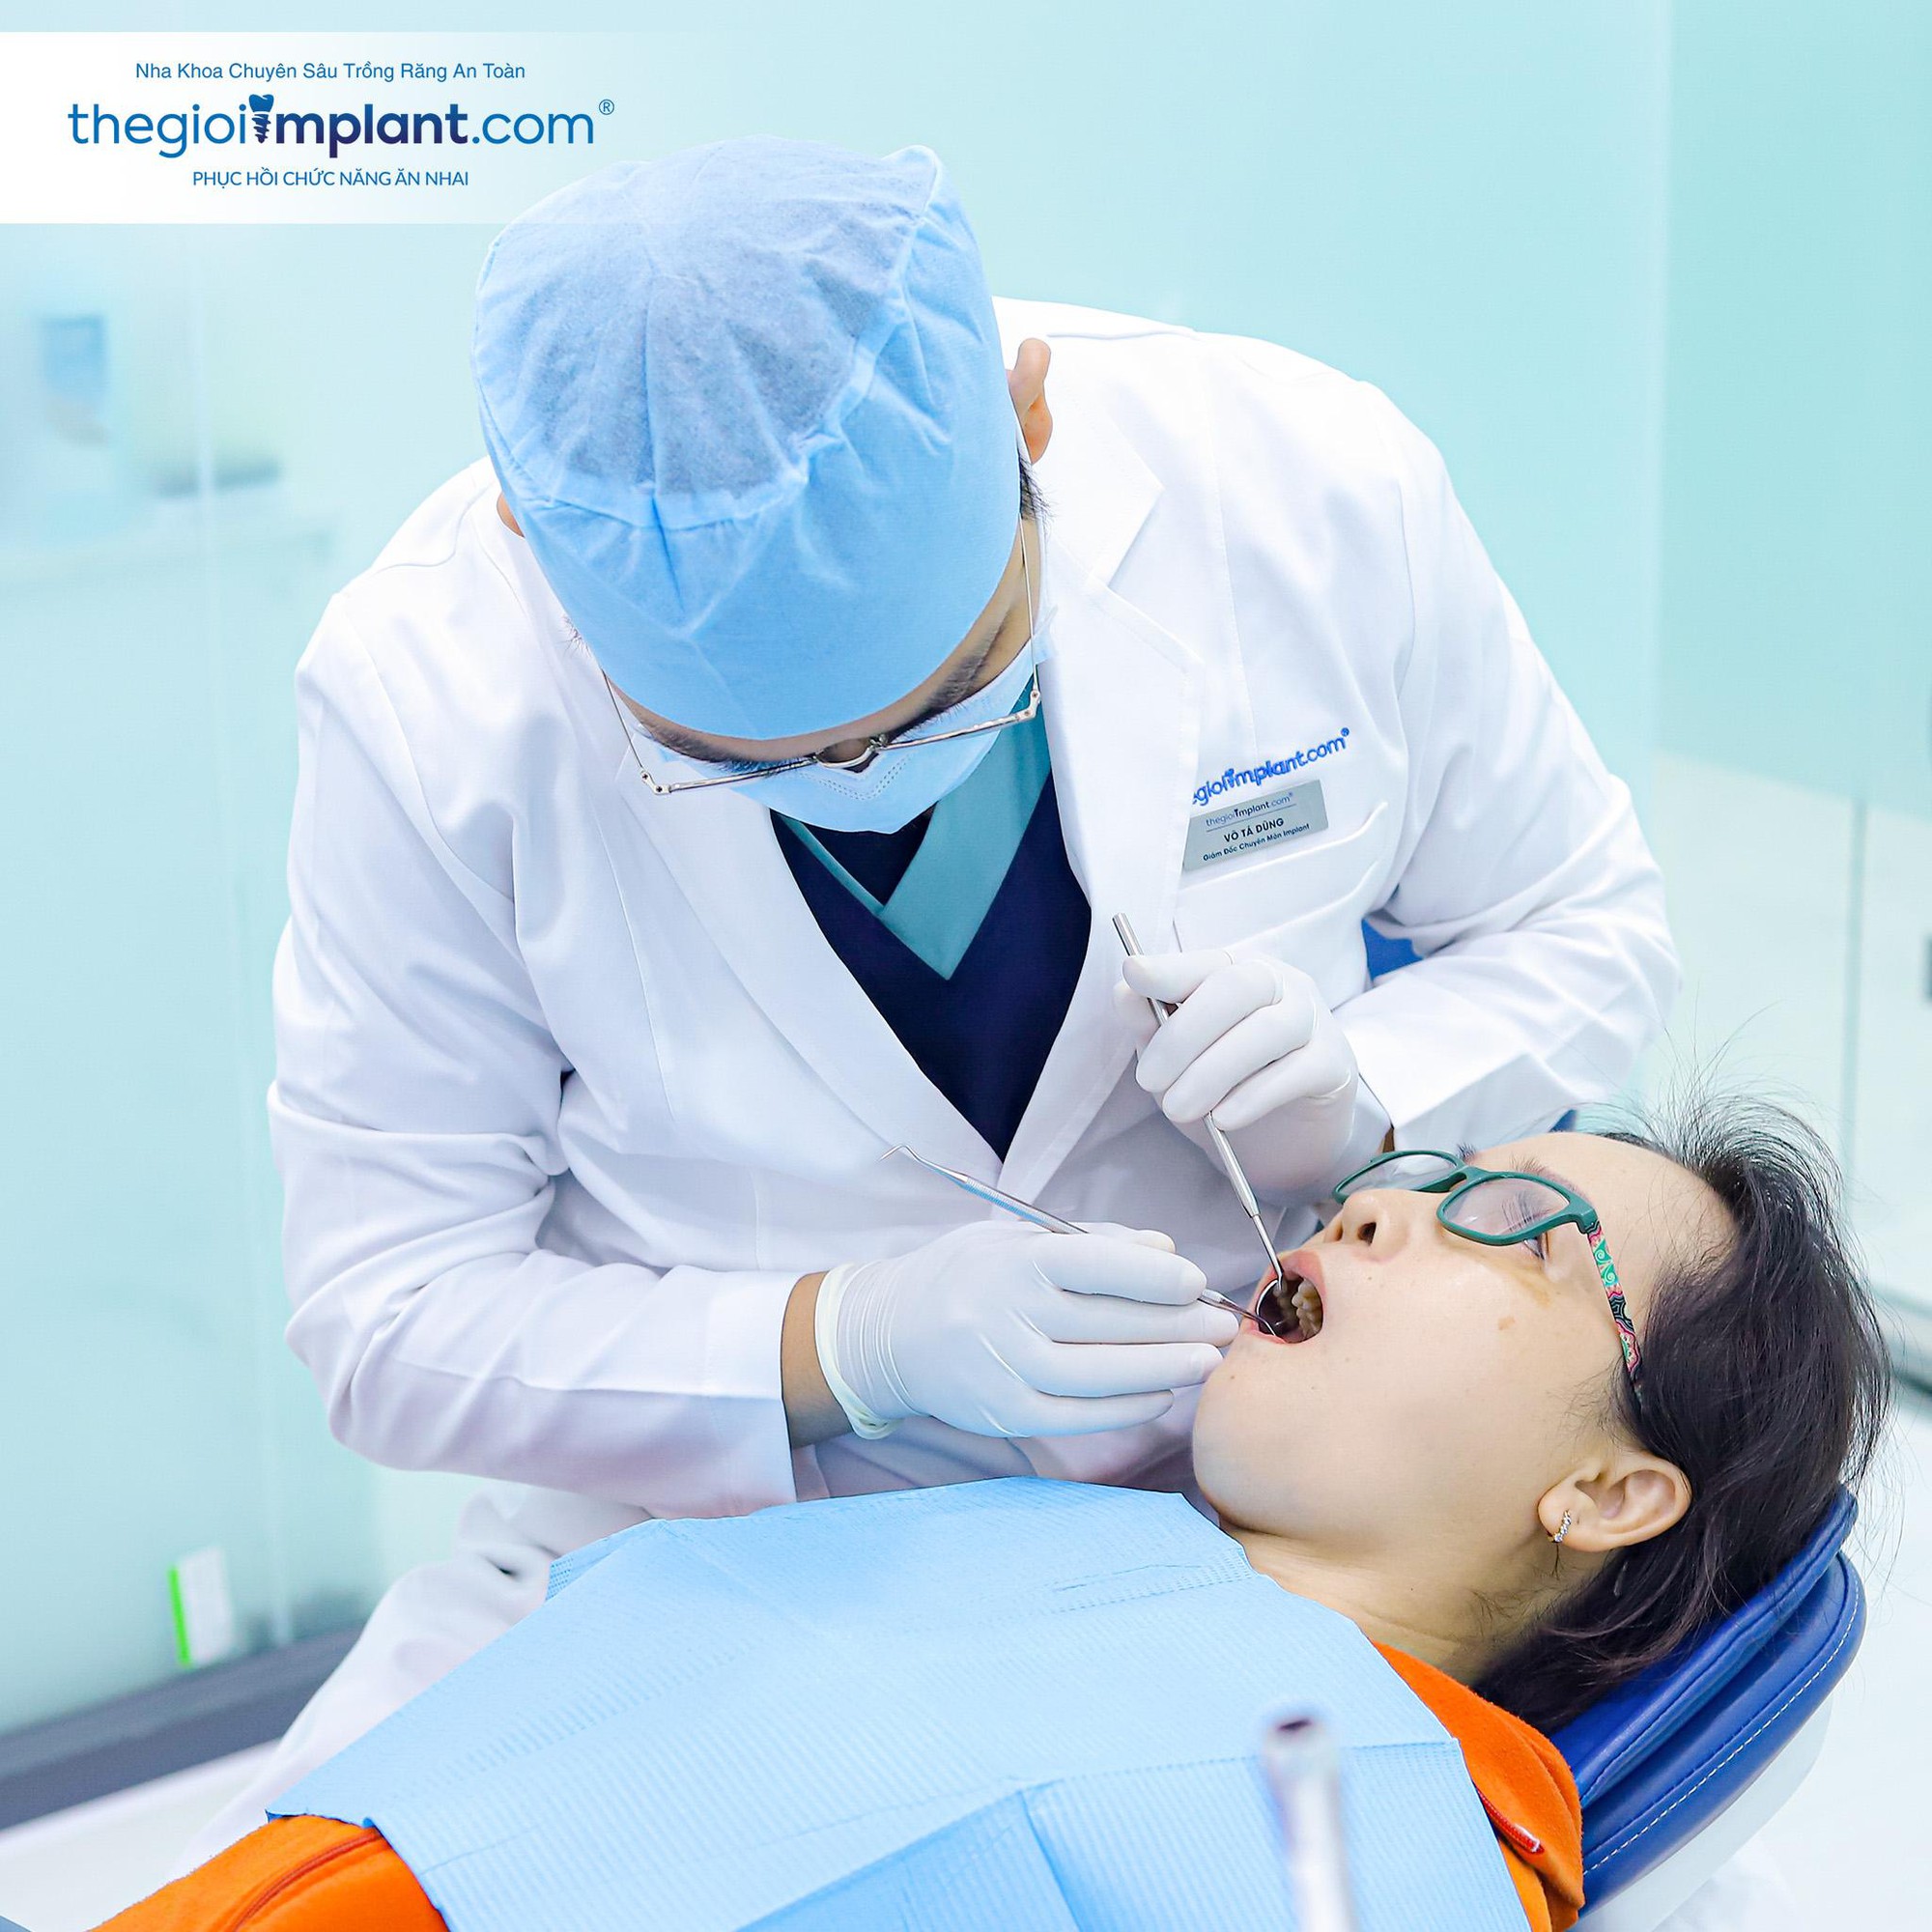 Nha khoa Thế Giới Implant: “Hồi sinh” nụ cười cho người mất răng - Ảnh 2.